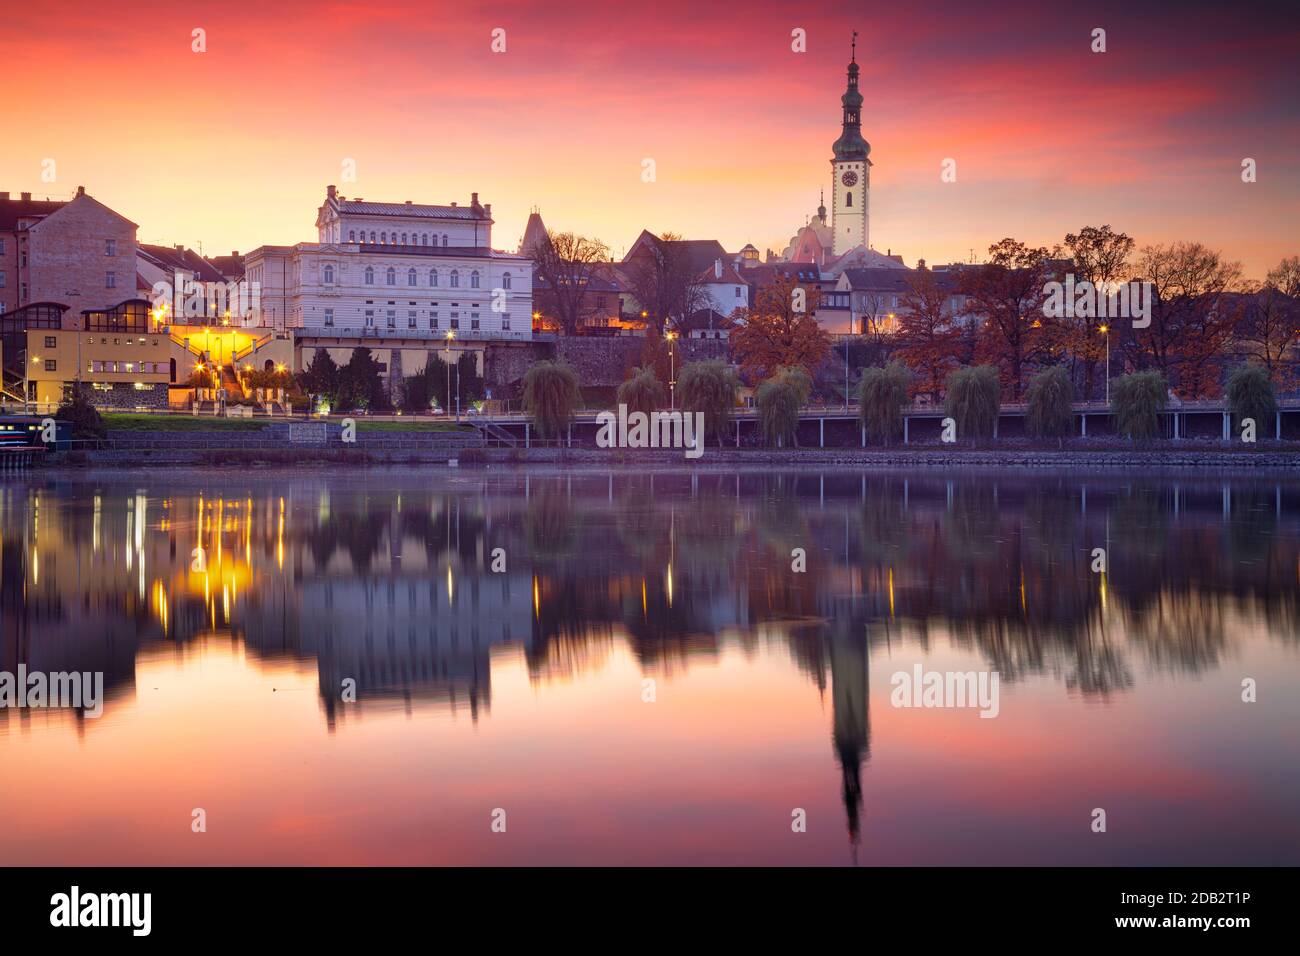 Tabor, République tchèque. Image de paysage urbain de Tabor, République tchèque au beau coucher de soleil d'automne. Banque D'Images